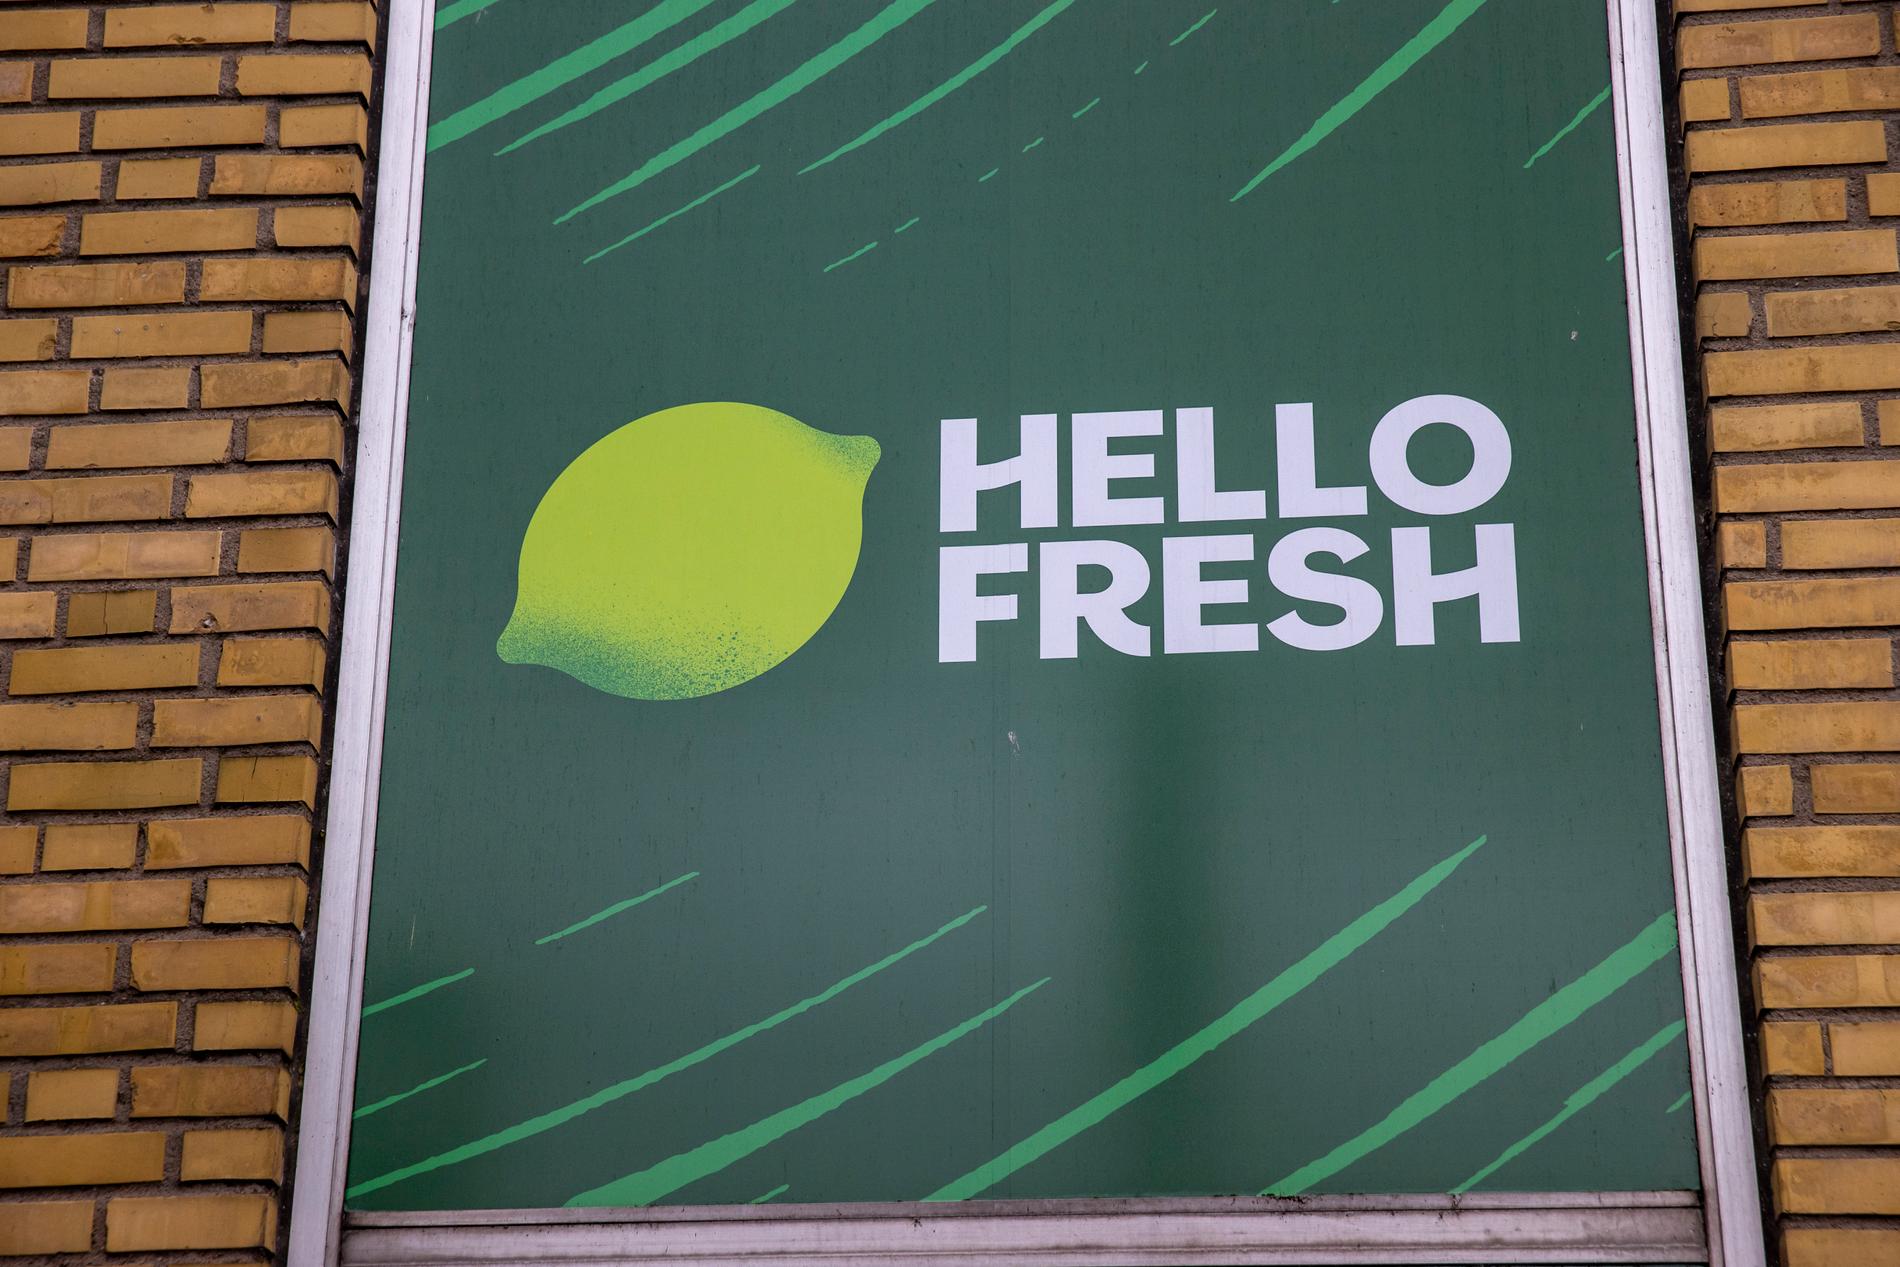 I Findus gamla fabrikslokal öppnade matkasseföretaget Hellofresh sitt lager. Nu har de expanderat och flyttat till en ännu större lokal strax intill. 